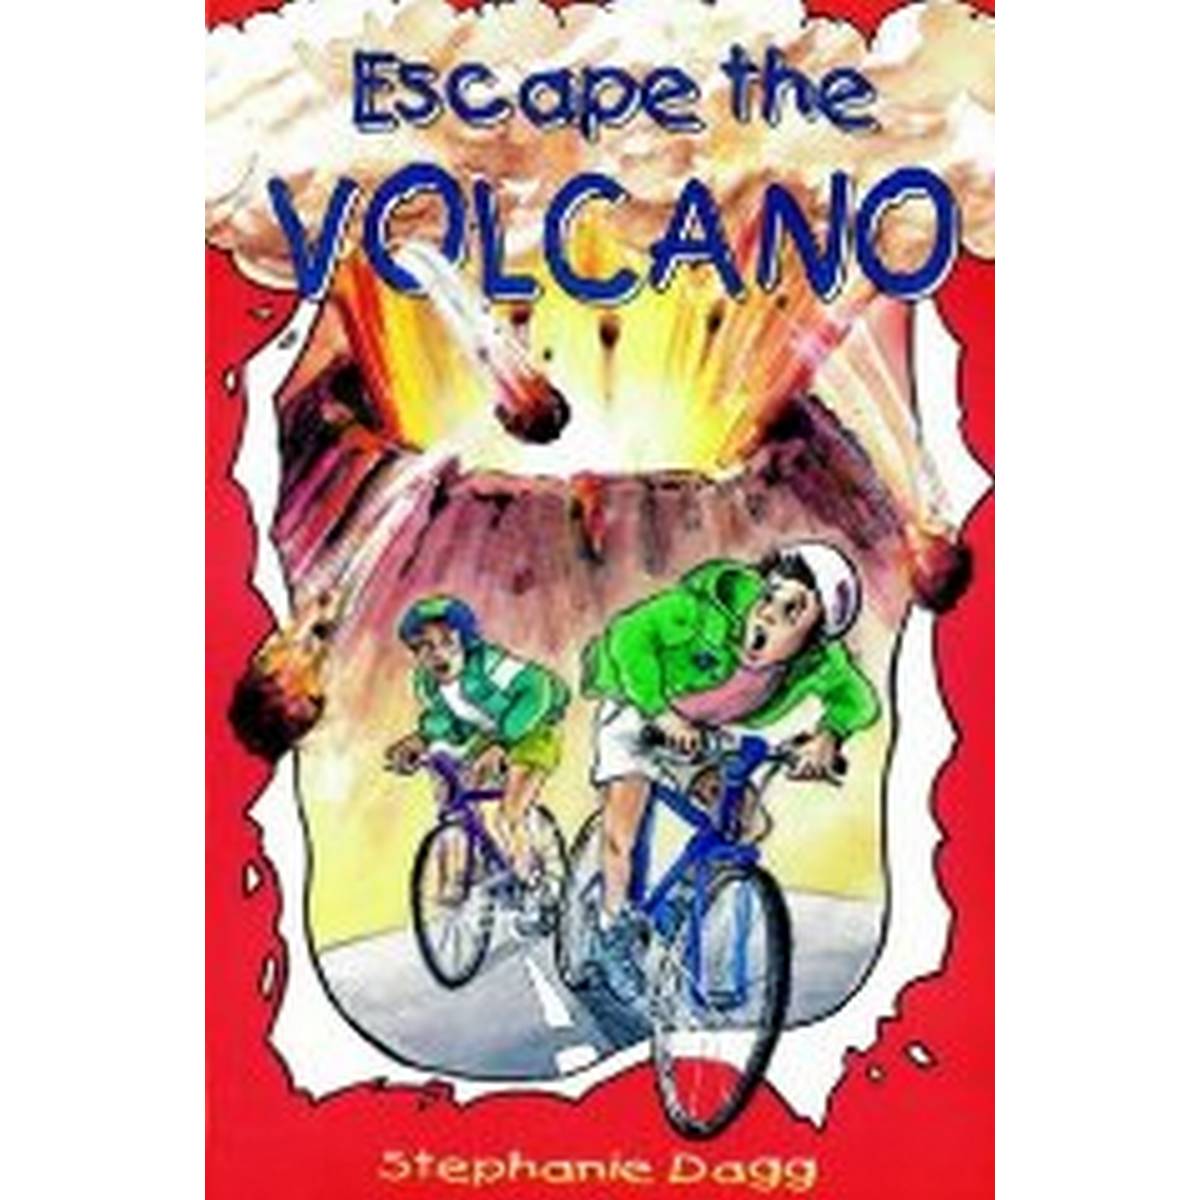 Escape the Volcano